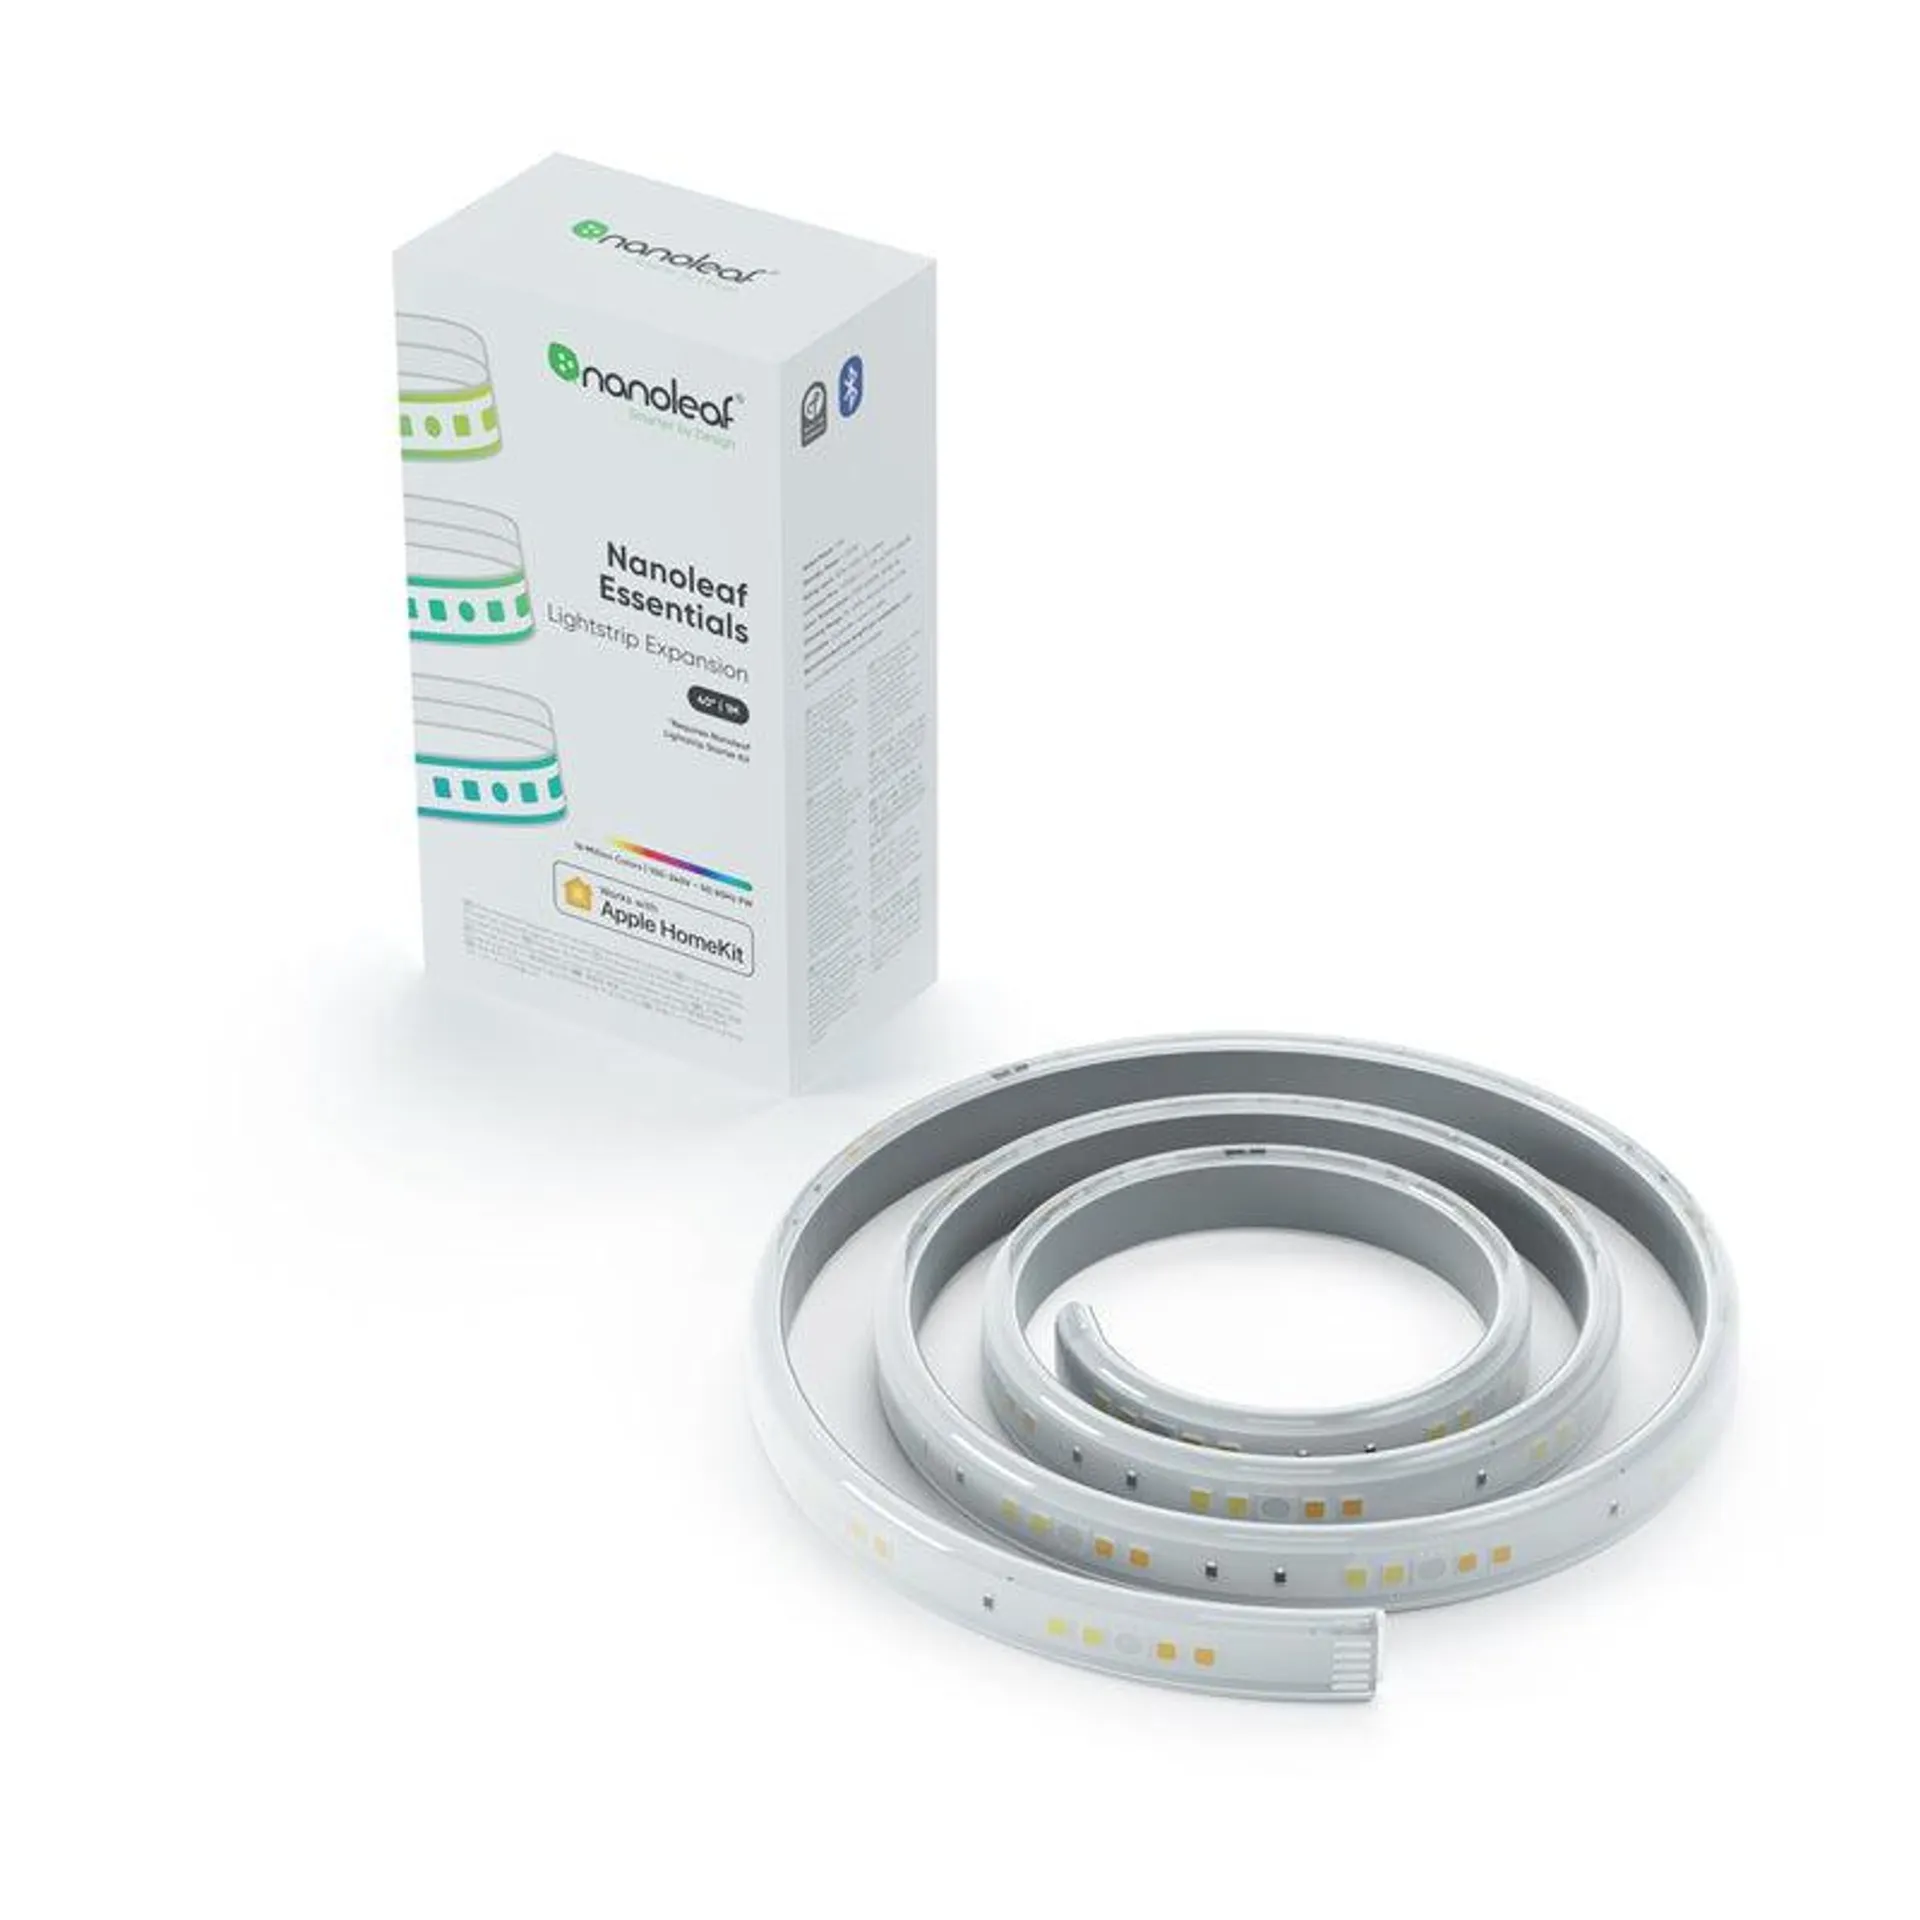 Nanoleaf Essentials 1M Light Strip Expansion Pack | NL550001LS1M